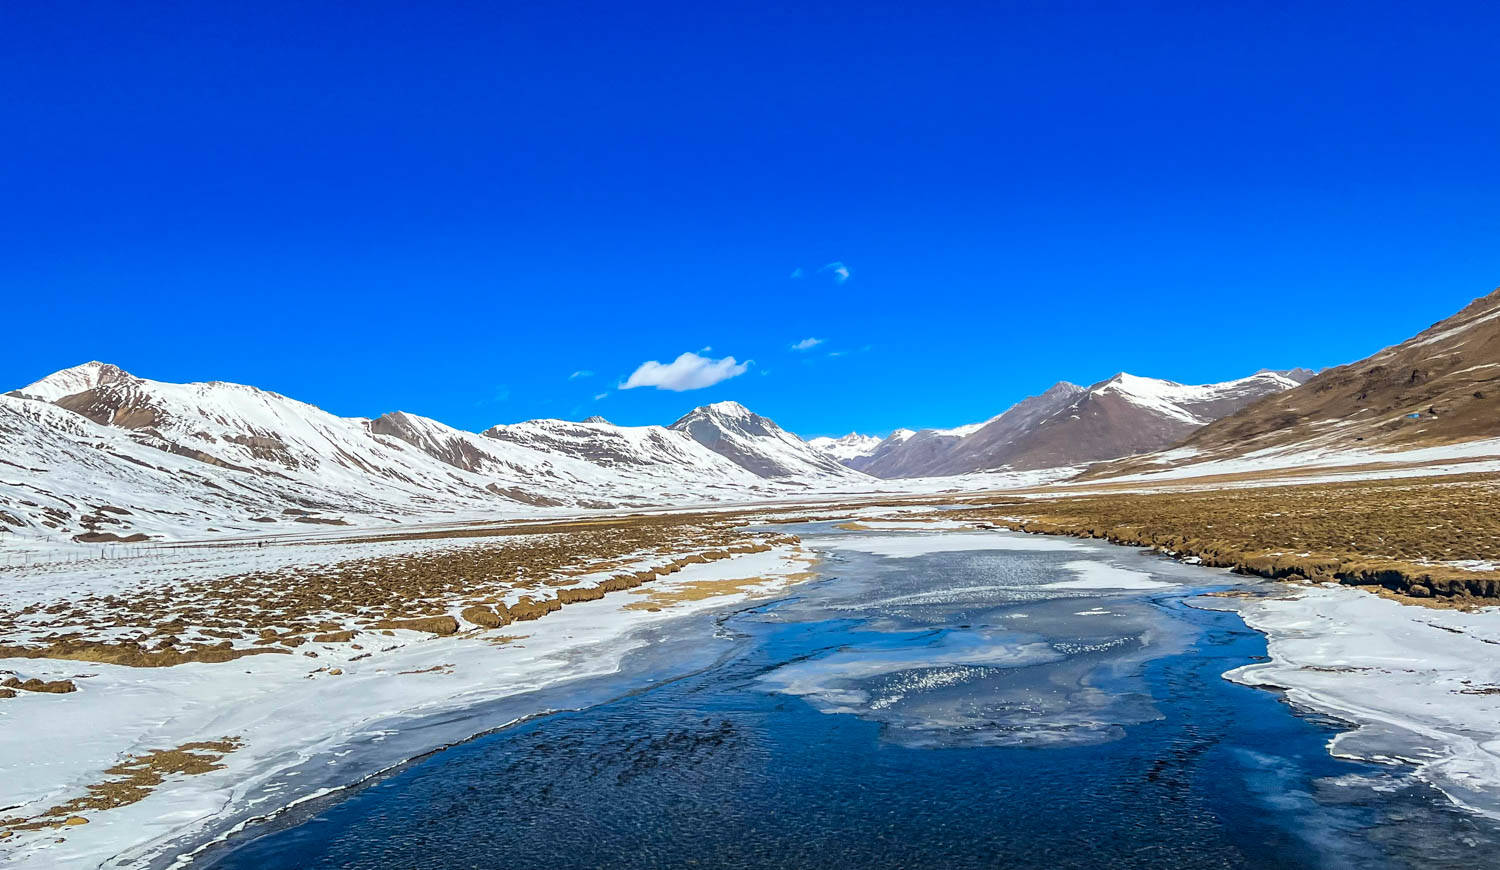 原创西藏自驾游第17天仙境般的布托湖不要门票别被网络资料骗了